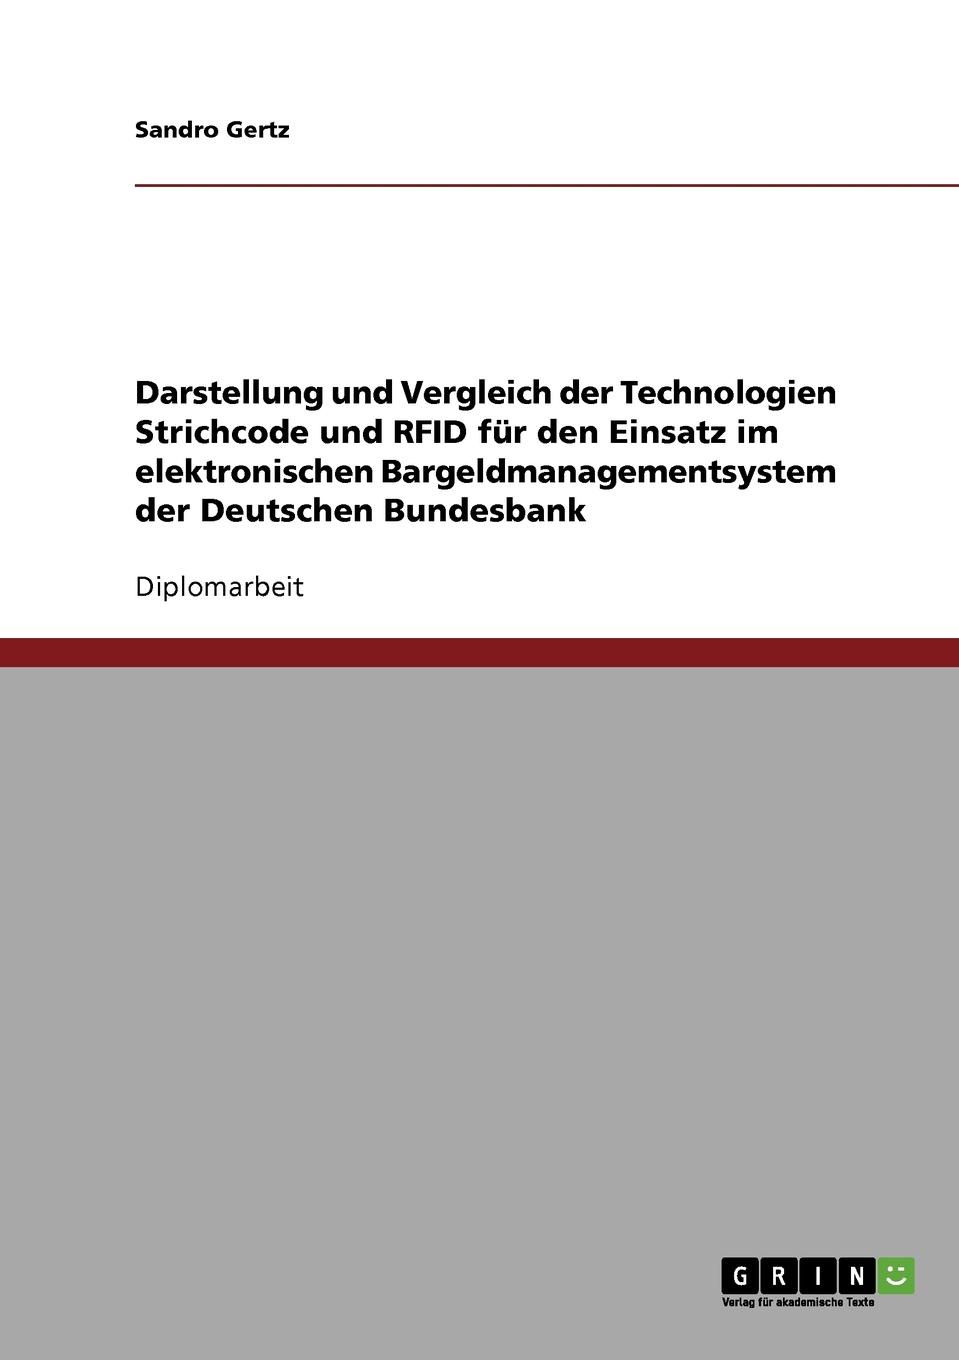 Darstellung und Vergleich der Technologien Strichcode und RFID fur den Einsatz im elektronischen Bargeldmanagementsystem der Deutschen Bundesbank